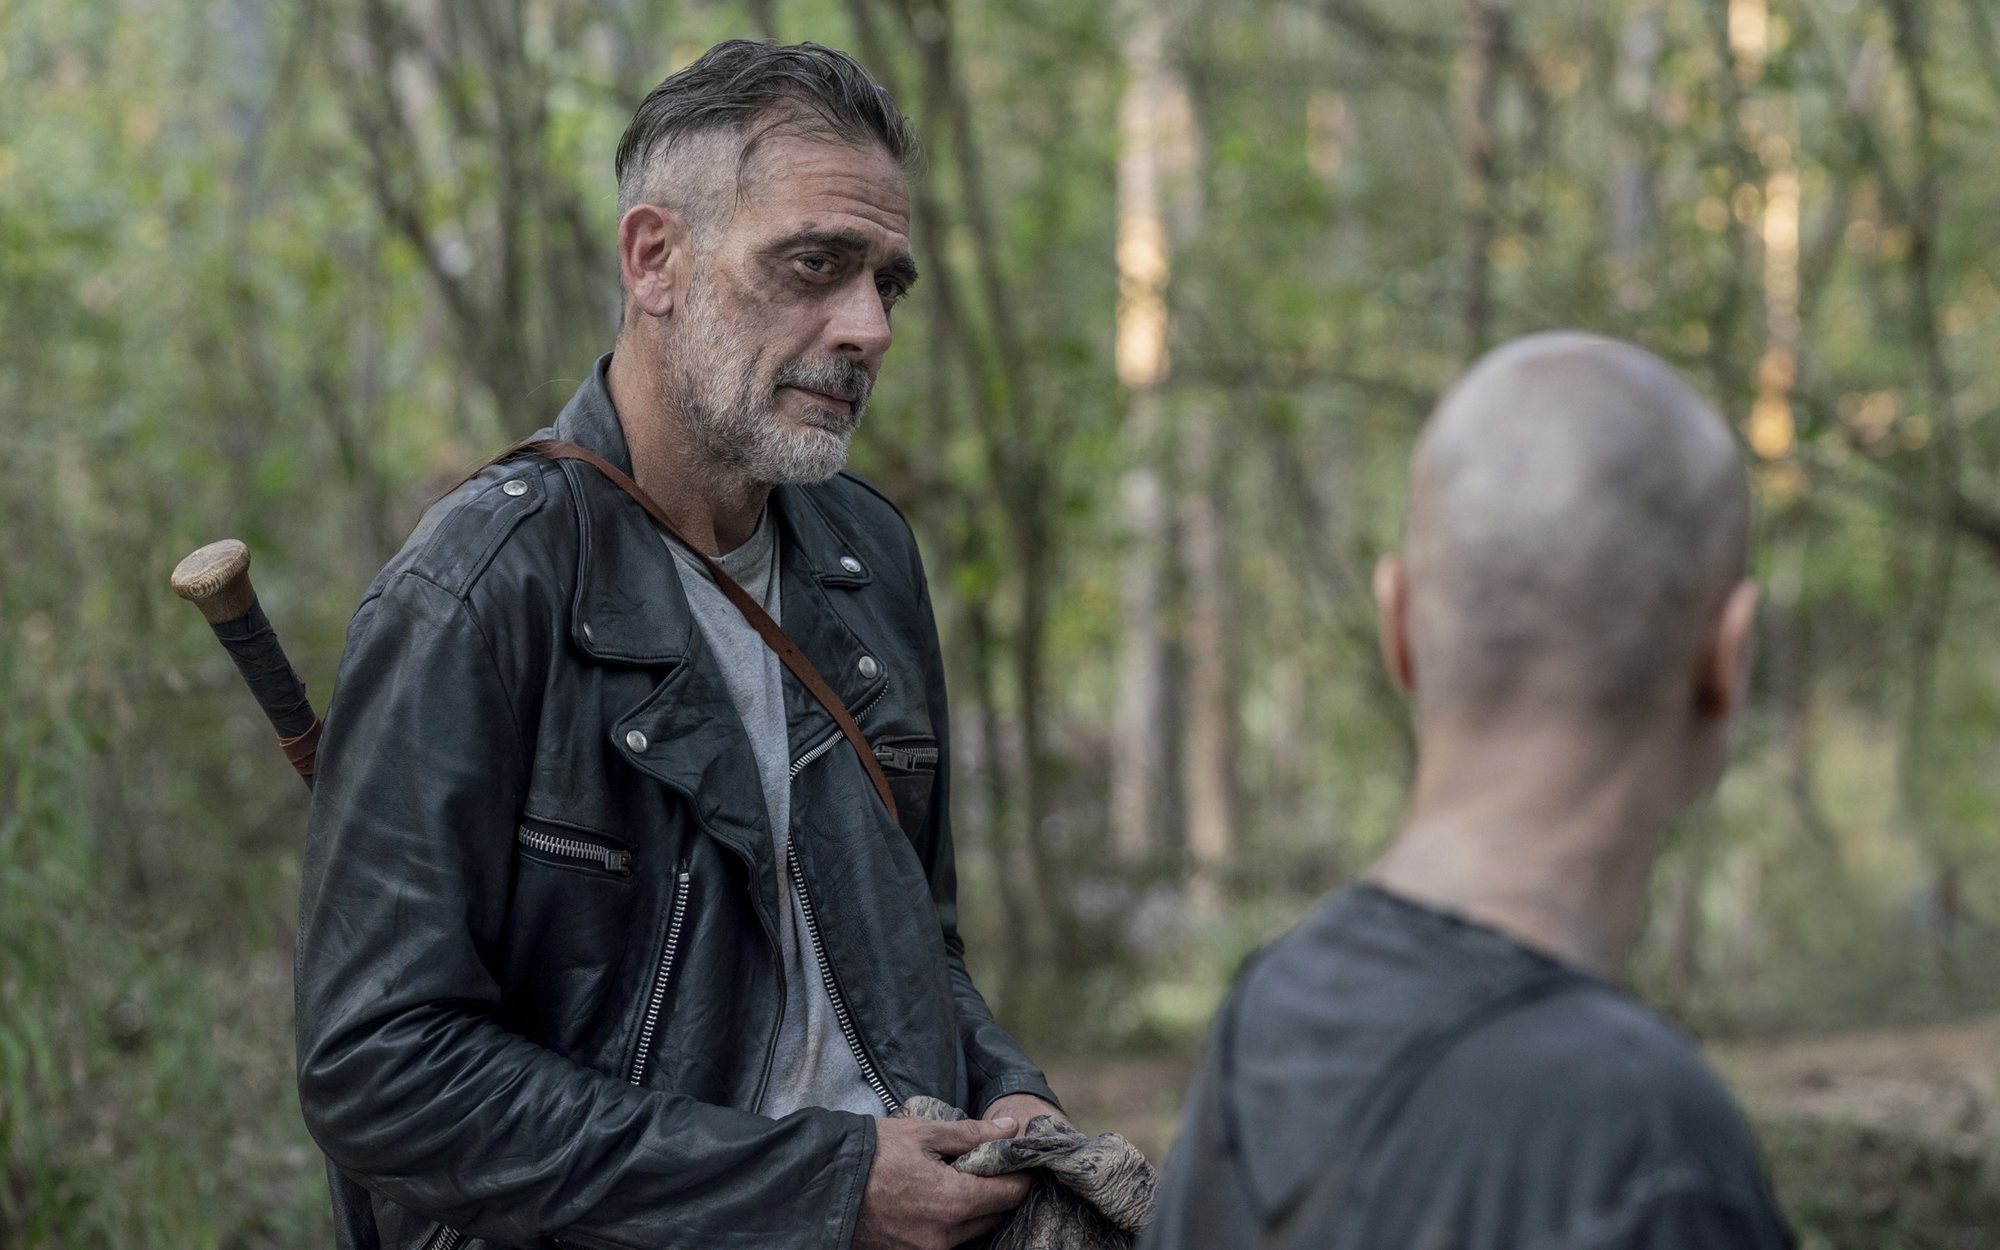 La recta final de la décima temporada de 'The Walking Dead' llega una semana antes a AMC+